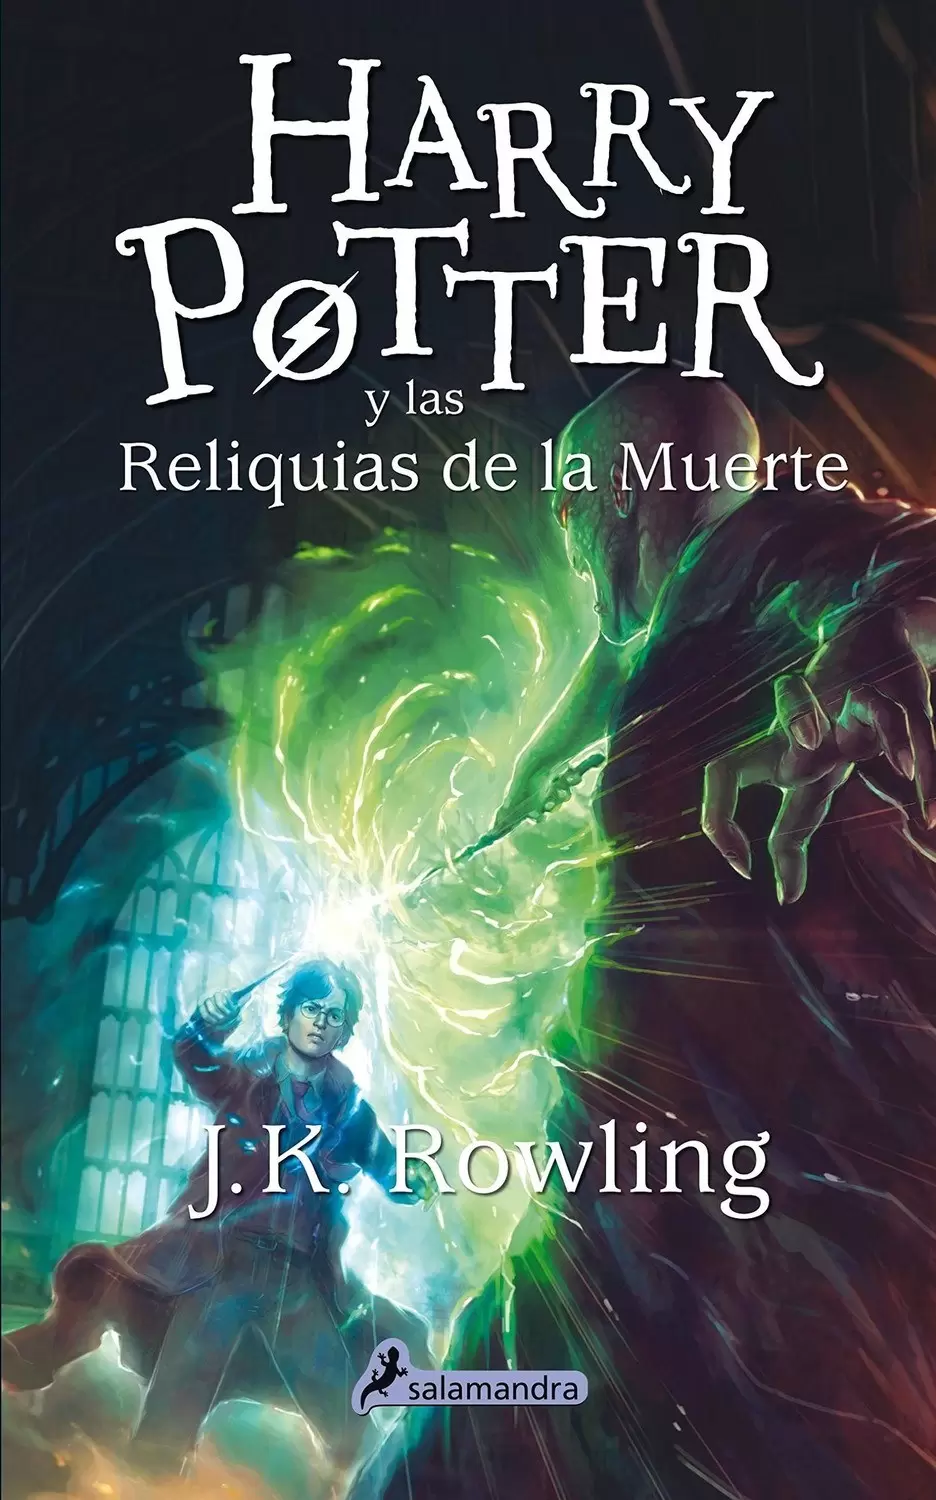 Livres Harry Potter et Animaux Fantastiques - Harry Potter y Las Reliquias De La Muerte